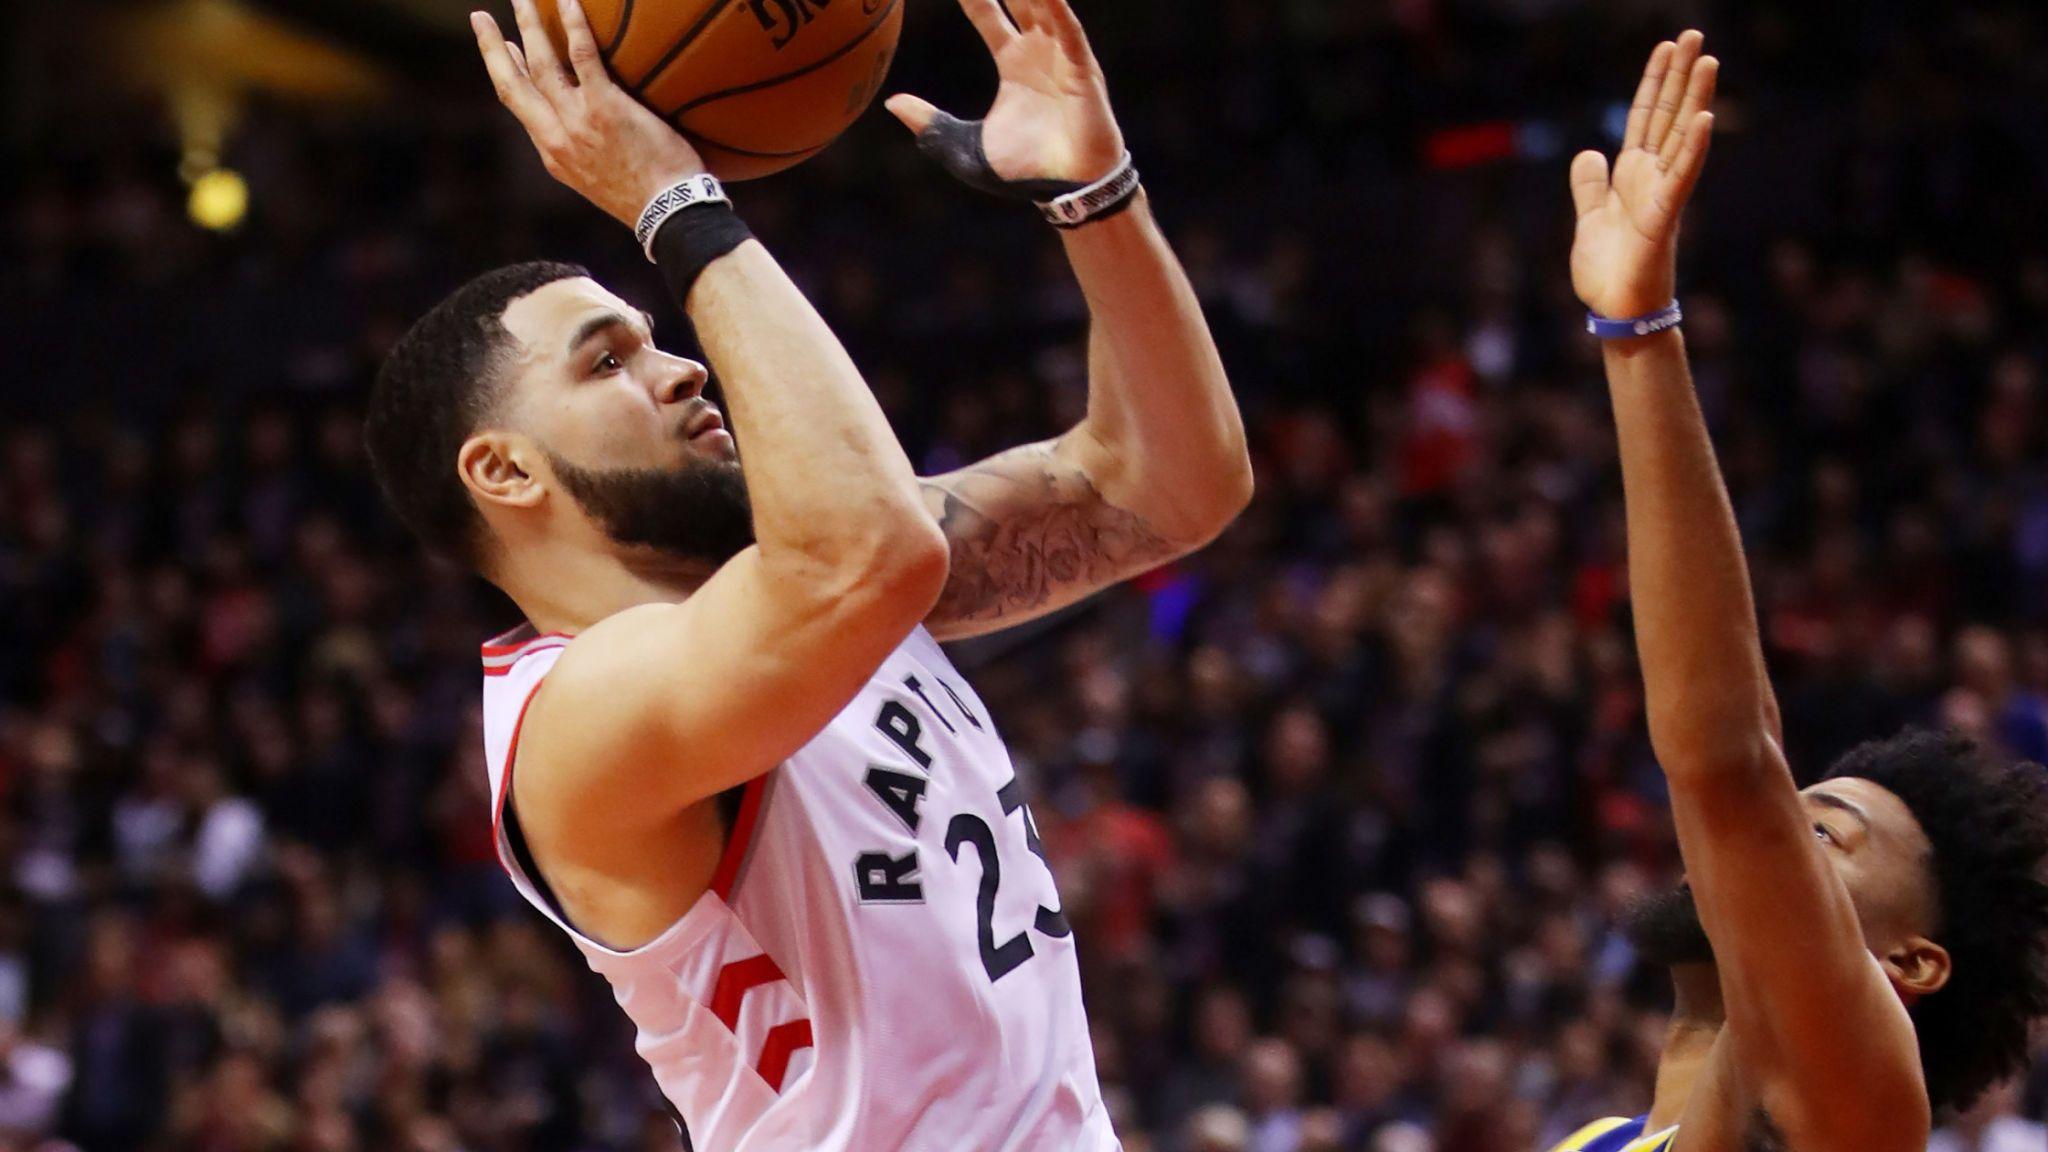 Fred VanVleet insists Toronto Raptors' depth showed in NBA Finals